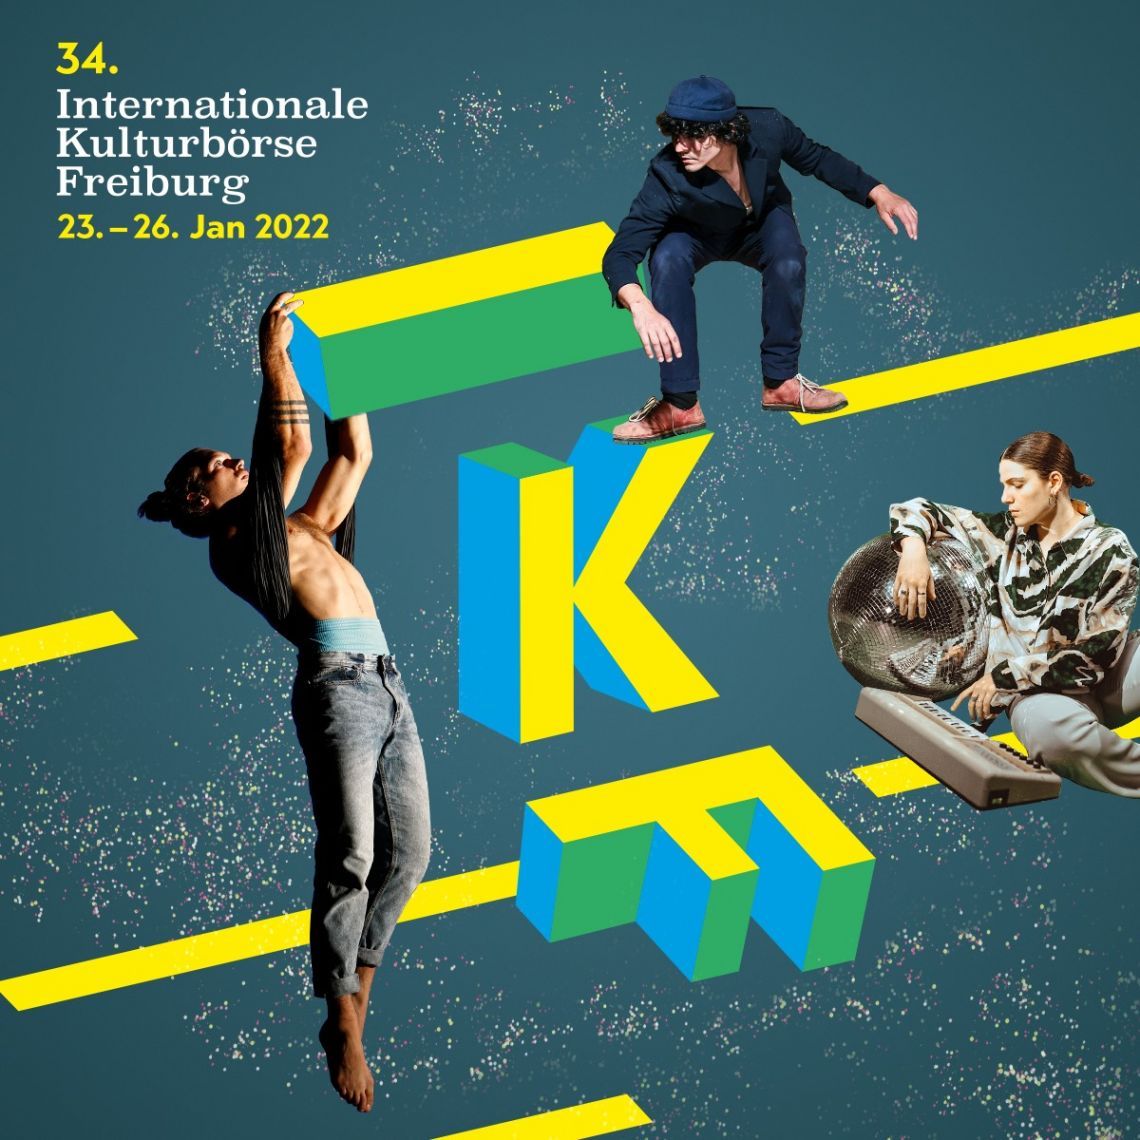 Bild zu 34. Internationale Kulturbörse Freiburg (IKF) Internationale Fachmesse für Bühnenproduktionen, Musik und Events